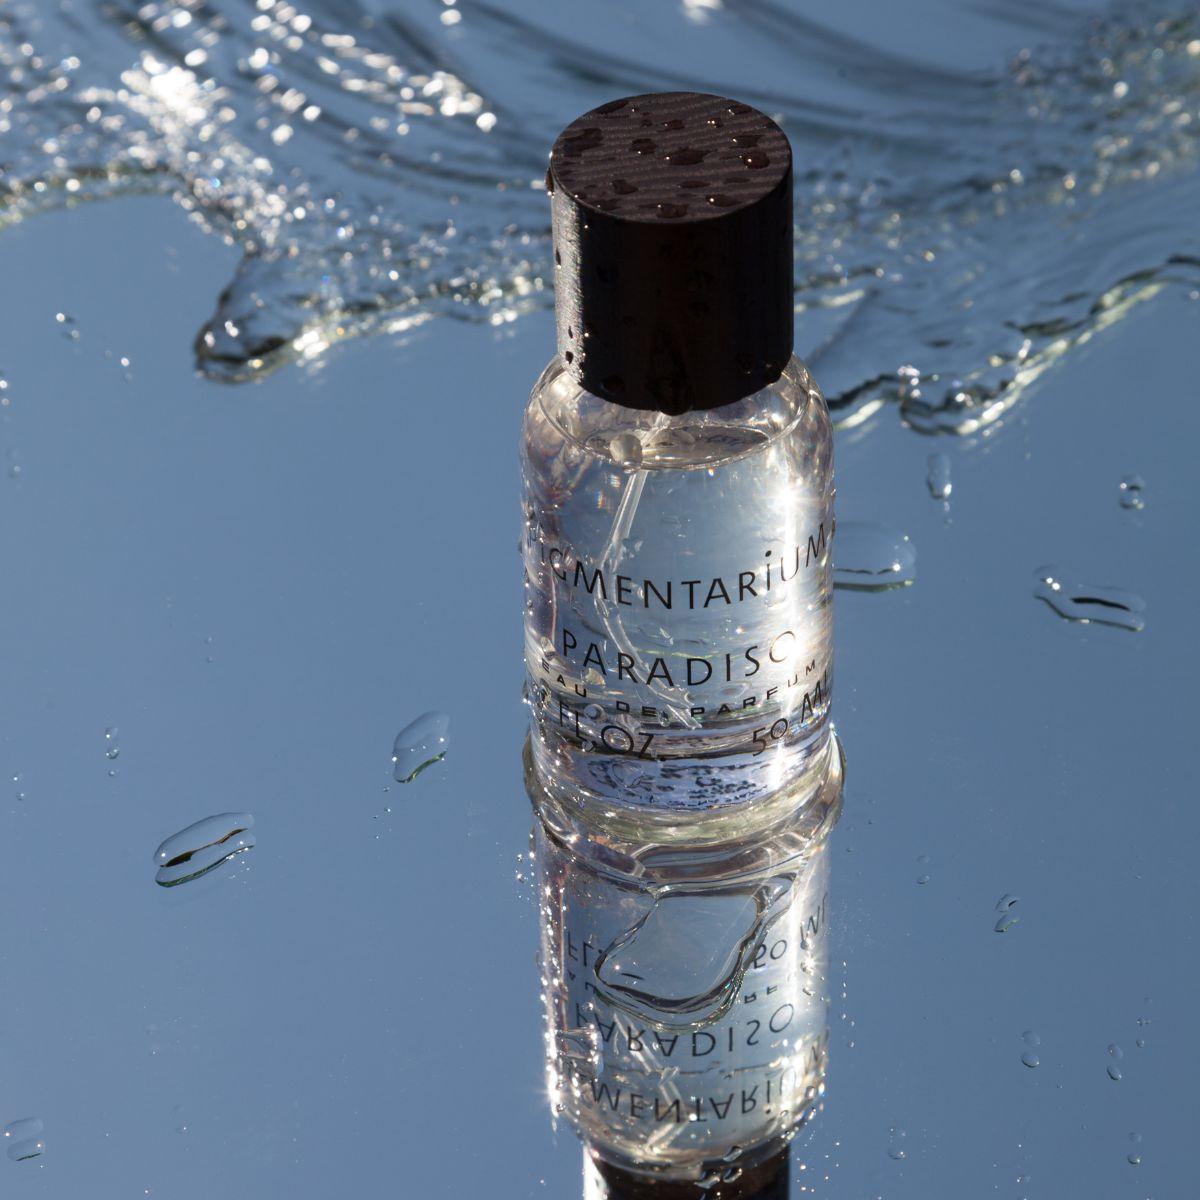 Afbeelding van paradiso eau de parfum van het merk Pigmentarium